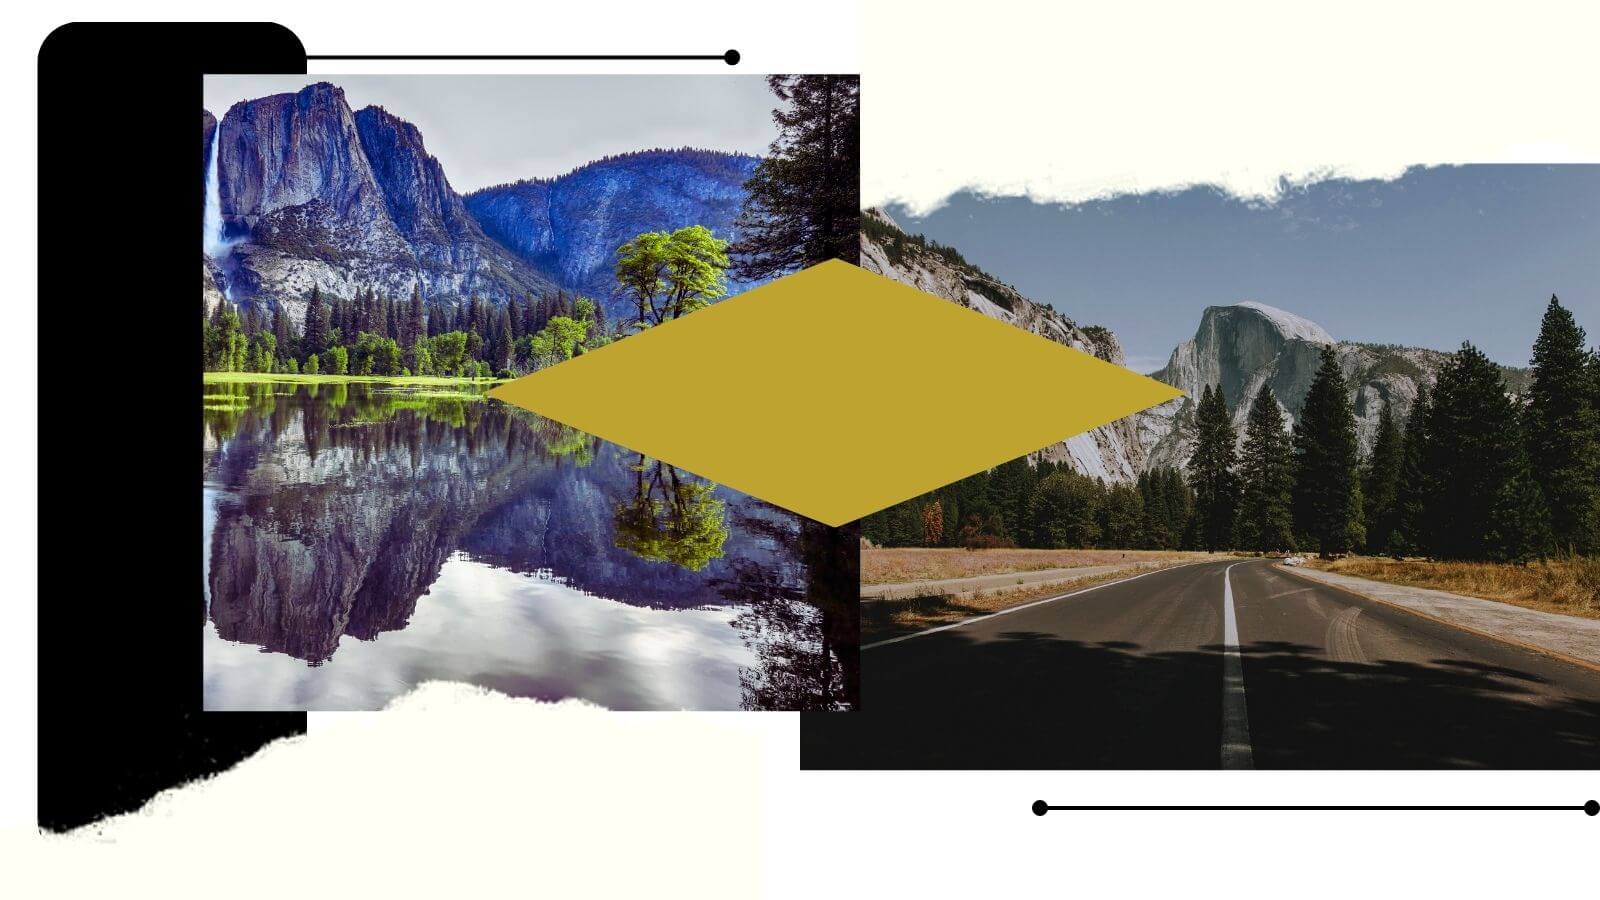 Yosemite and yellowstone landscapes